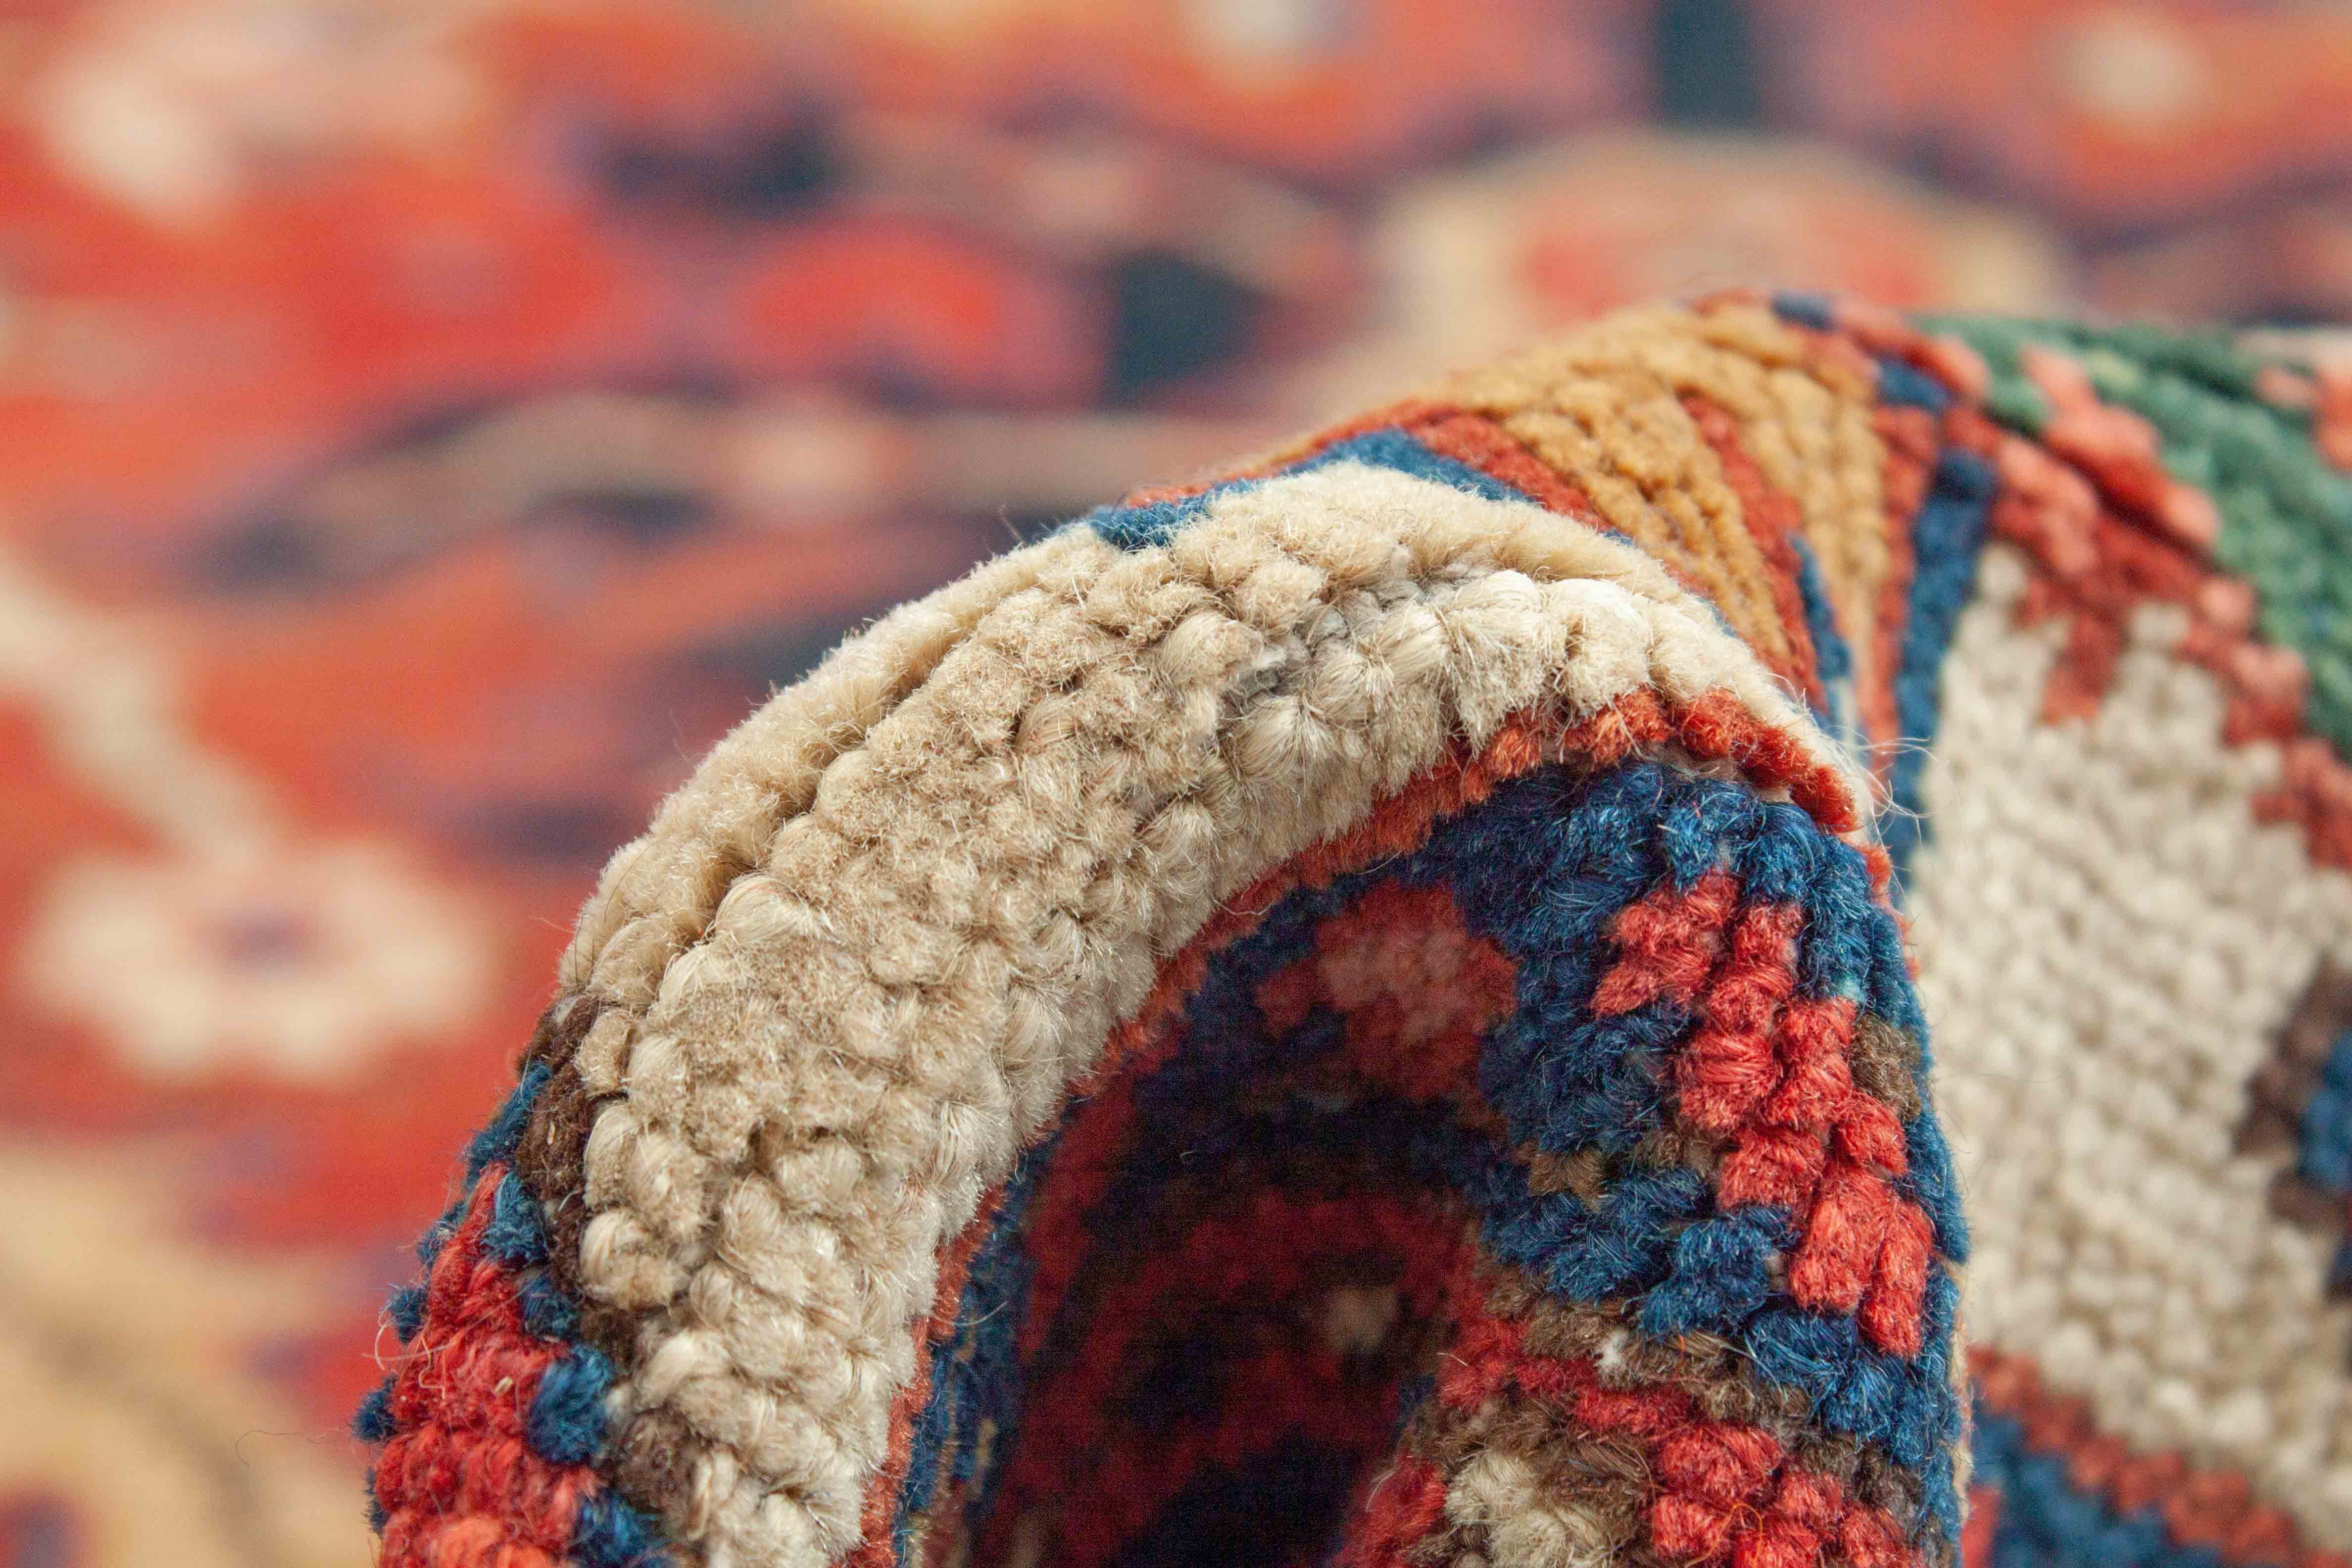 Eine Fotoaufnahme eines Heriz Teppichs.